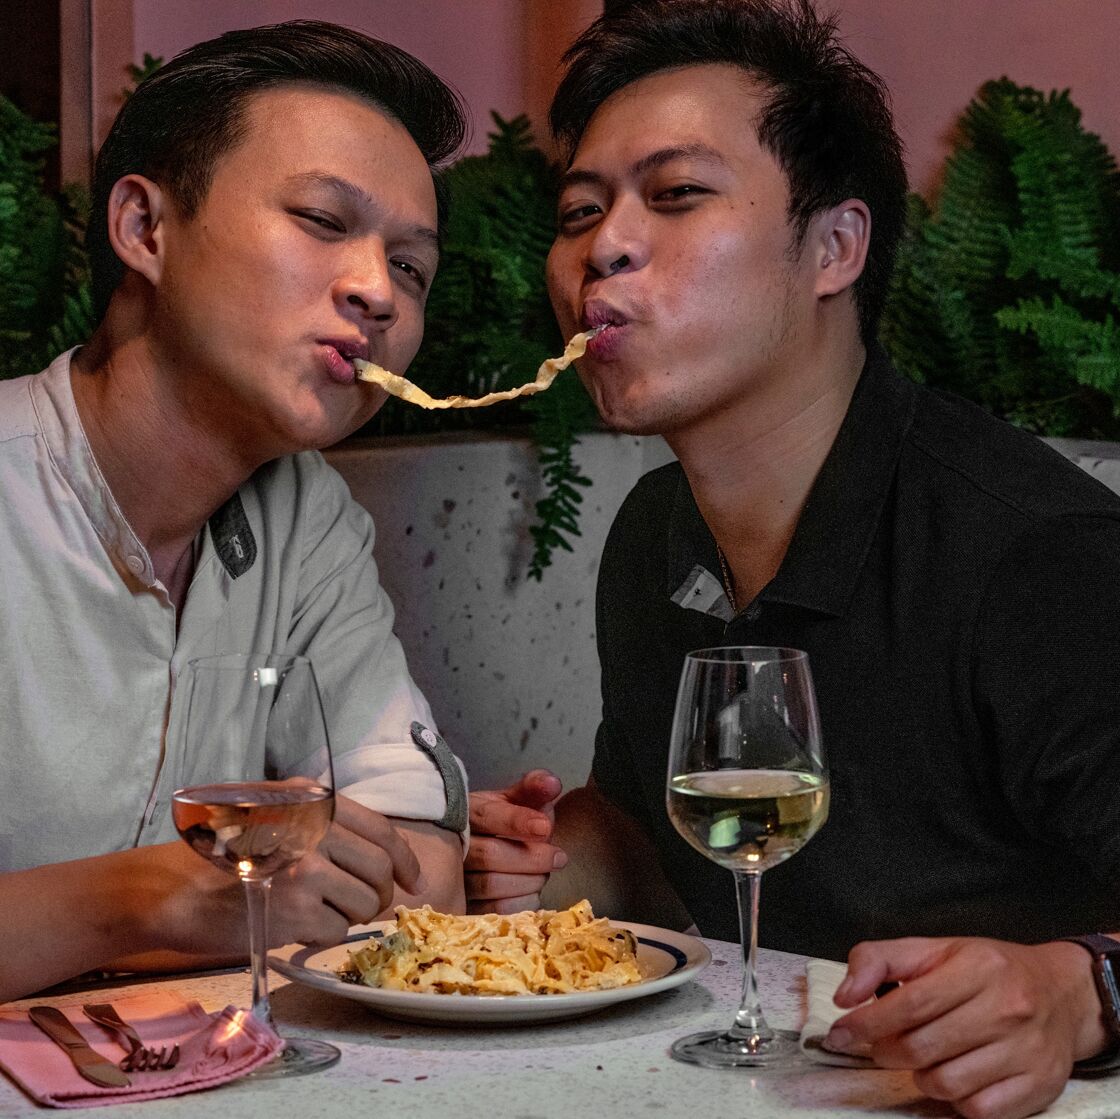 Two cute men slurp a pasta noodle together at Cafe Marcel.